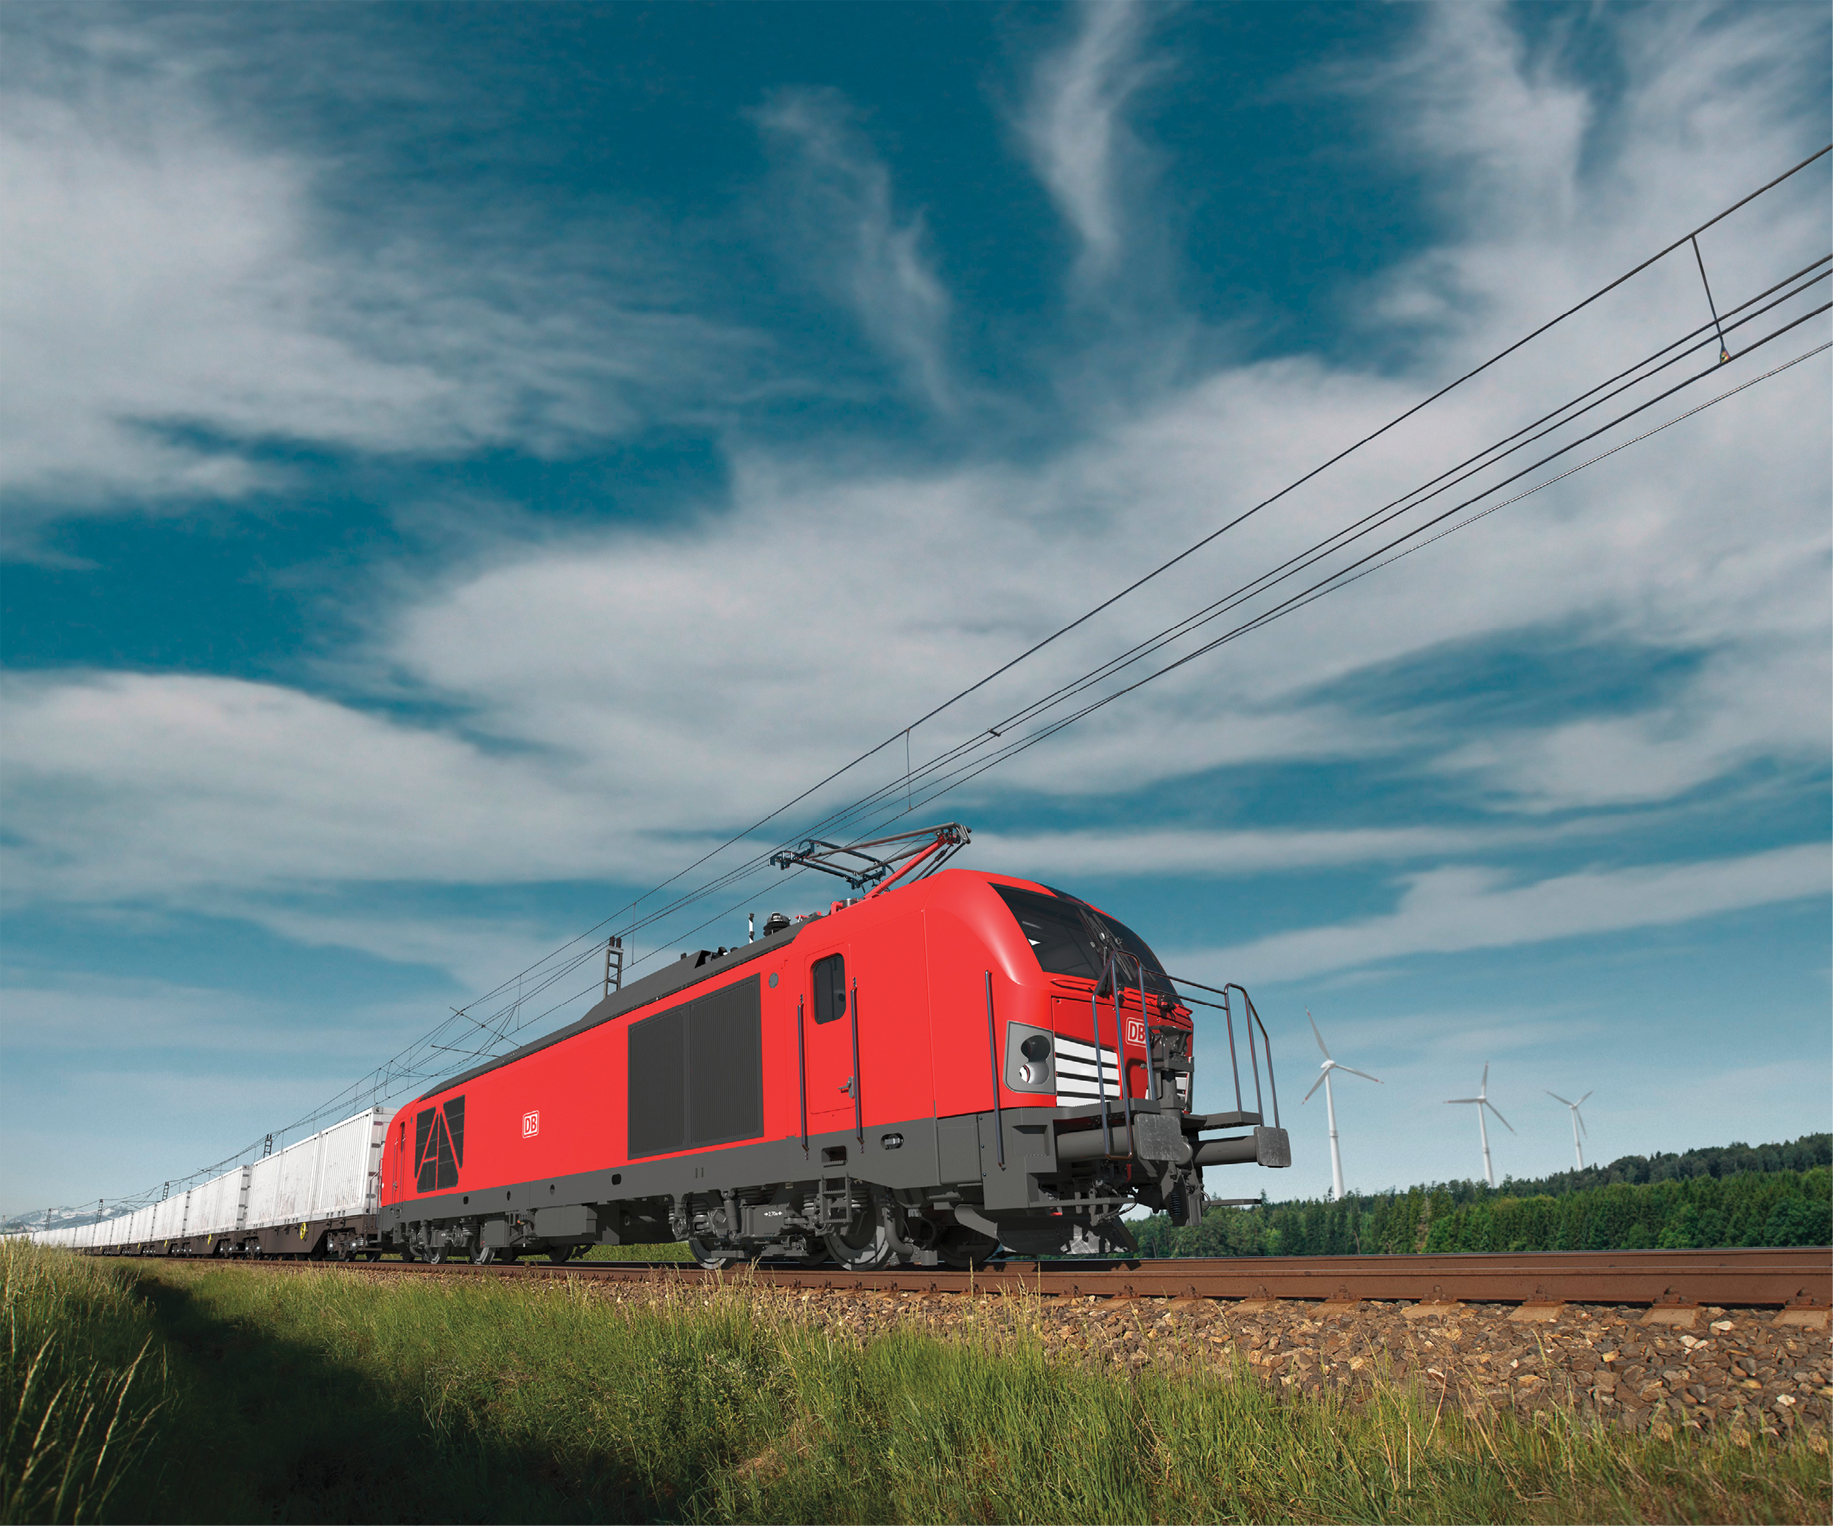 Triebfahrzeugbaureihe 249: Zweikraftlokomotiven vom Typ Vectron Dual Mode fahren sowohl elektrisch als auch mit Dieselmotor